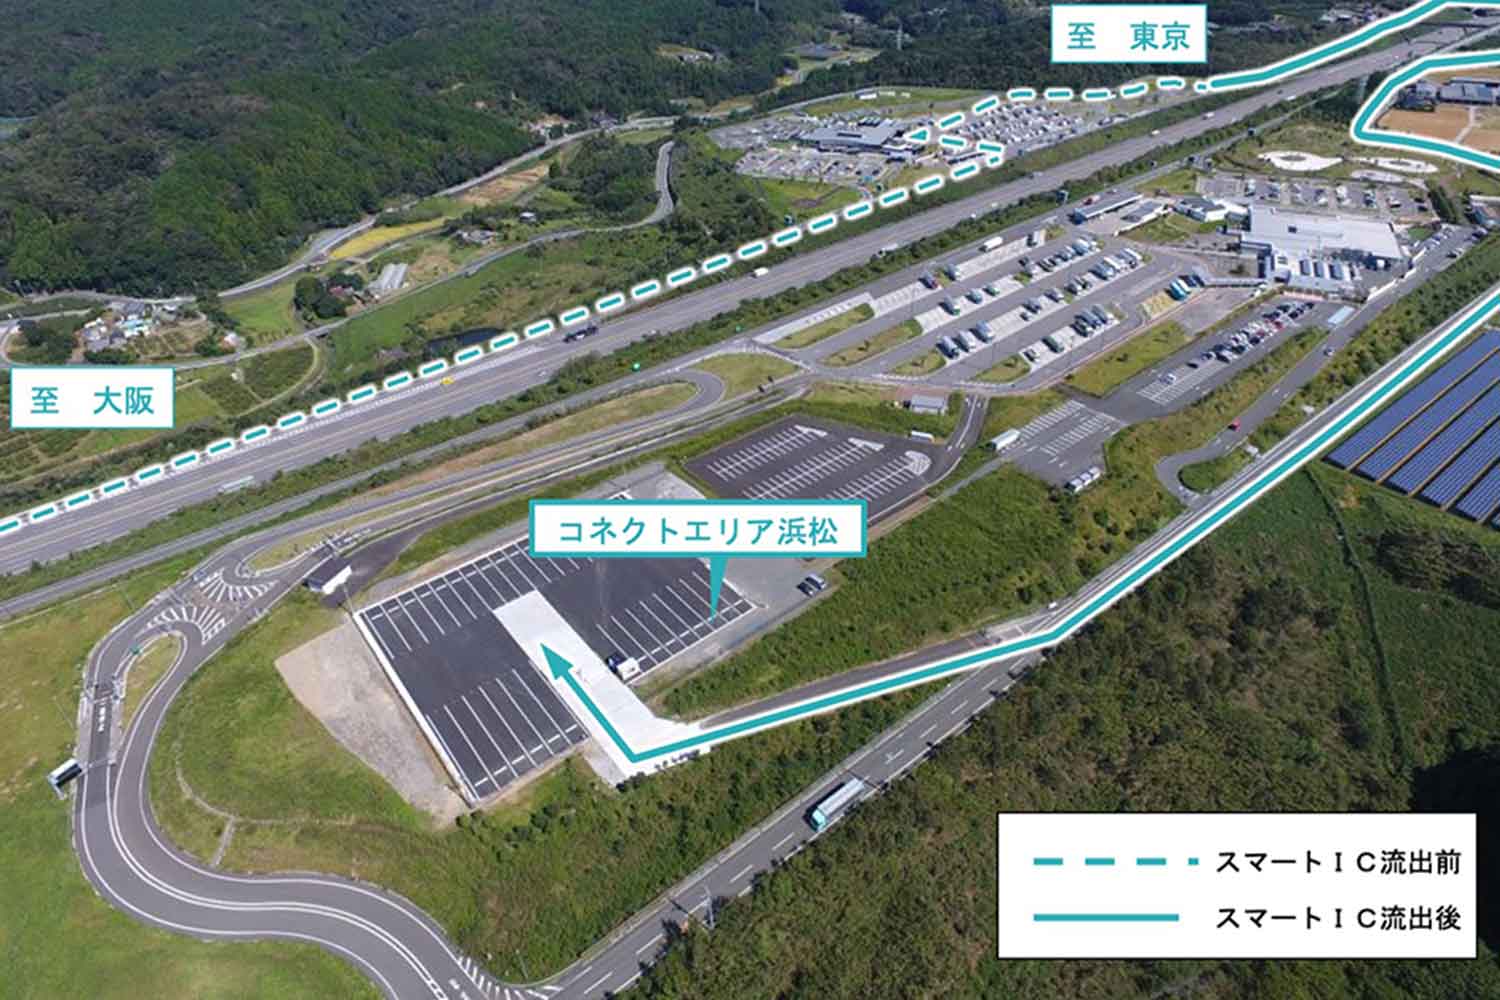 新東名高速道路の浜松SAの中継物流拠点である「コネクトエリア浜松」